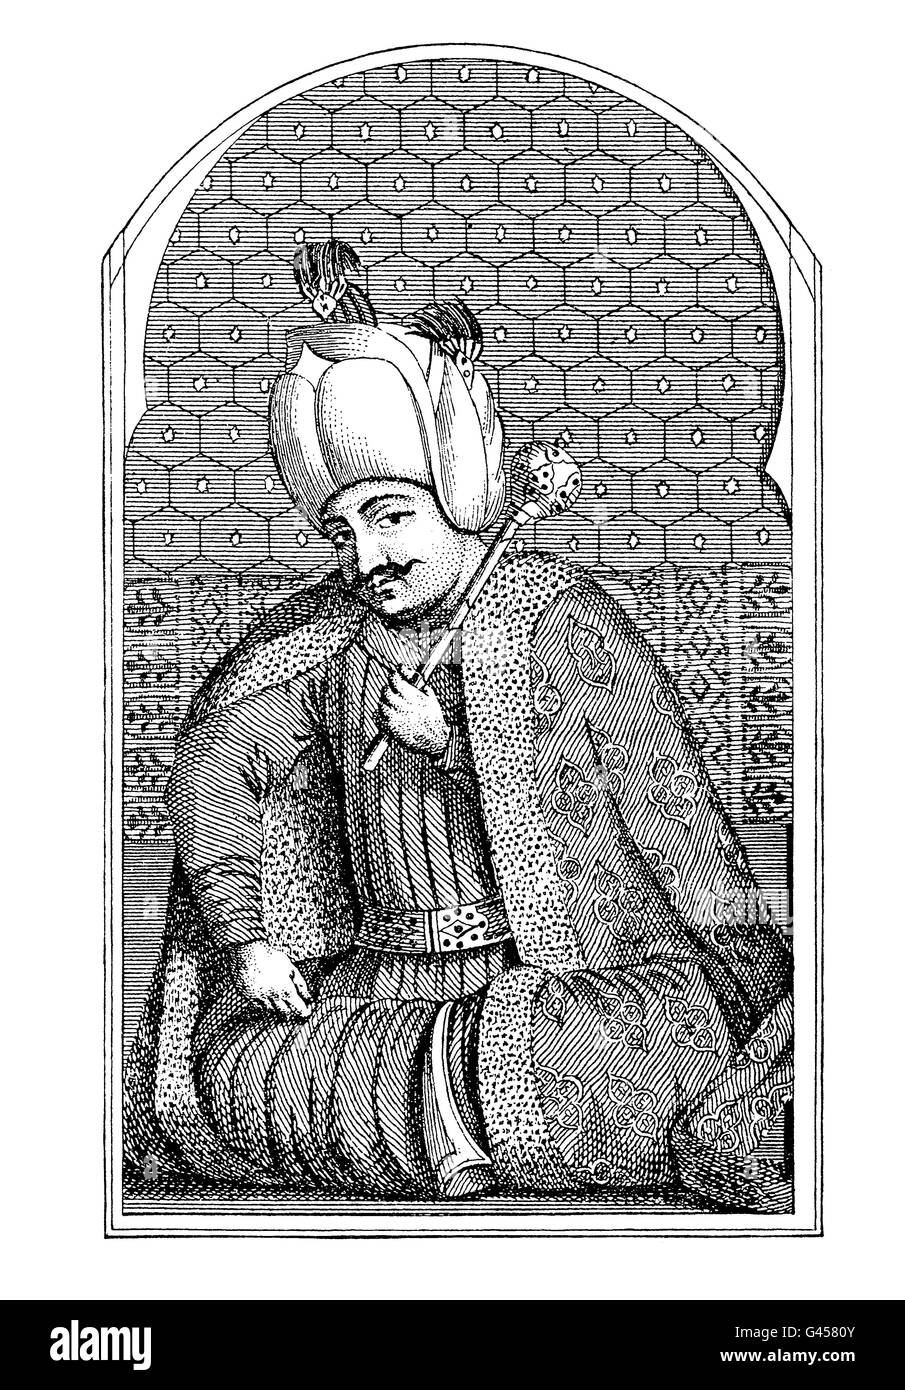 Selim I, Sultan of the Ottoman Empire in XVI century, engraving portrait Stock Photo